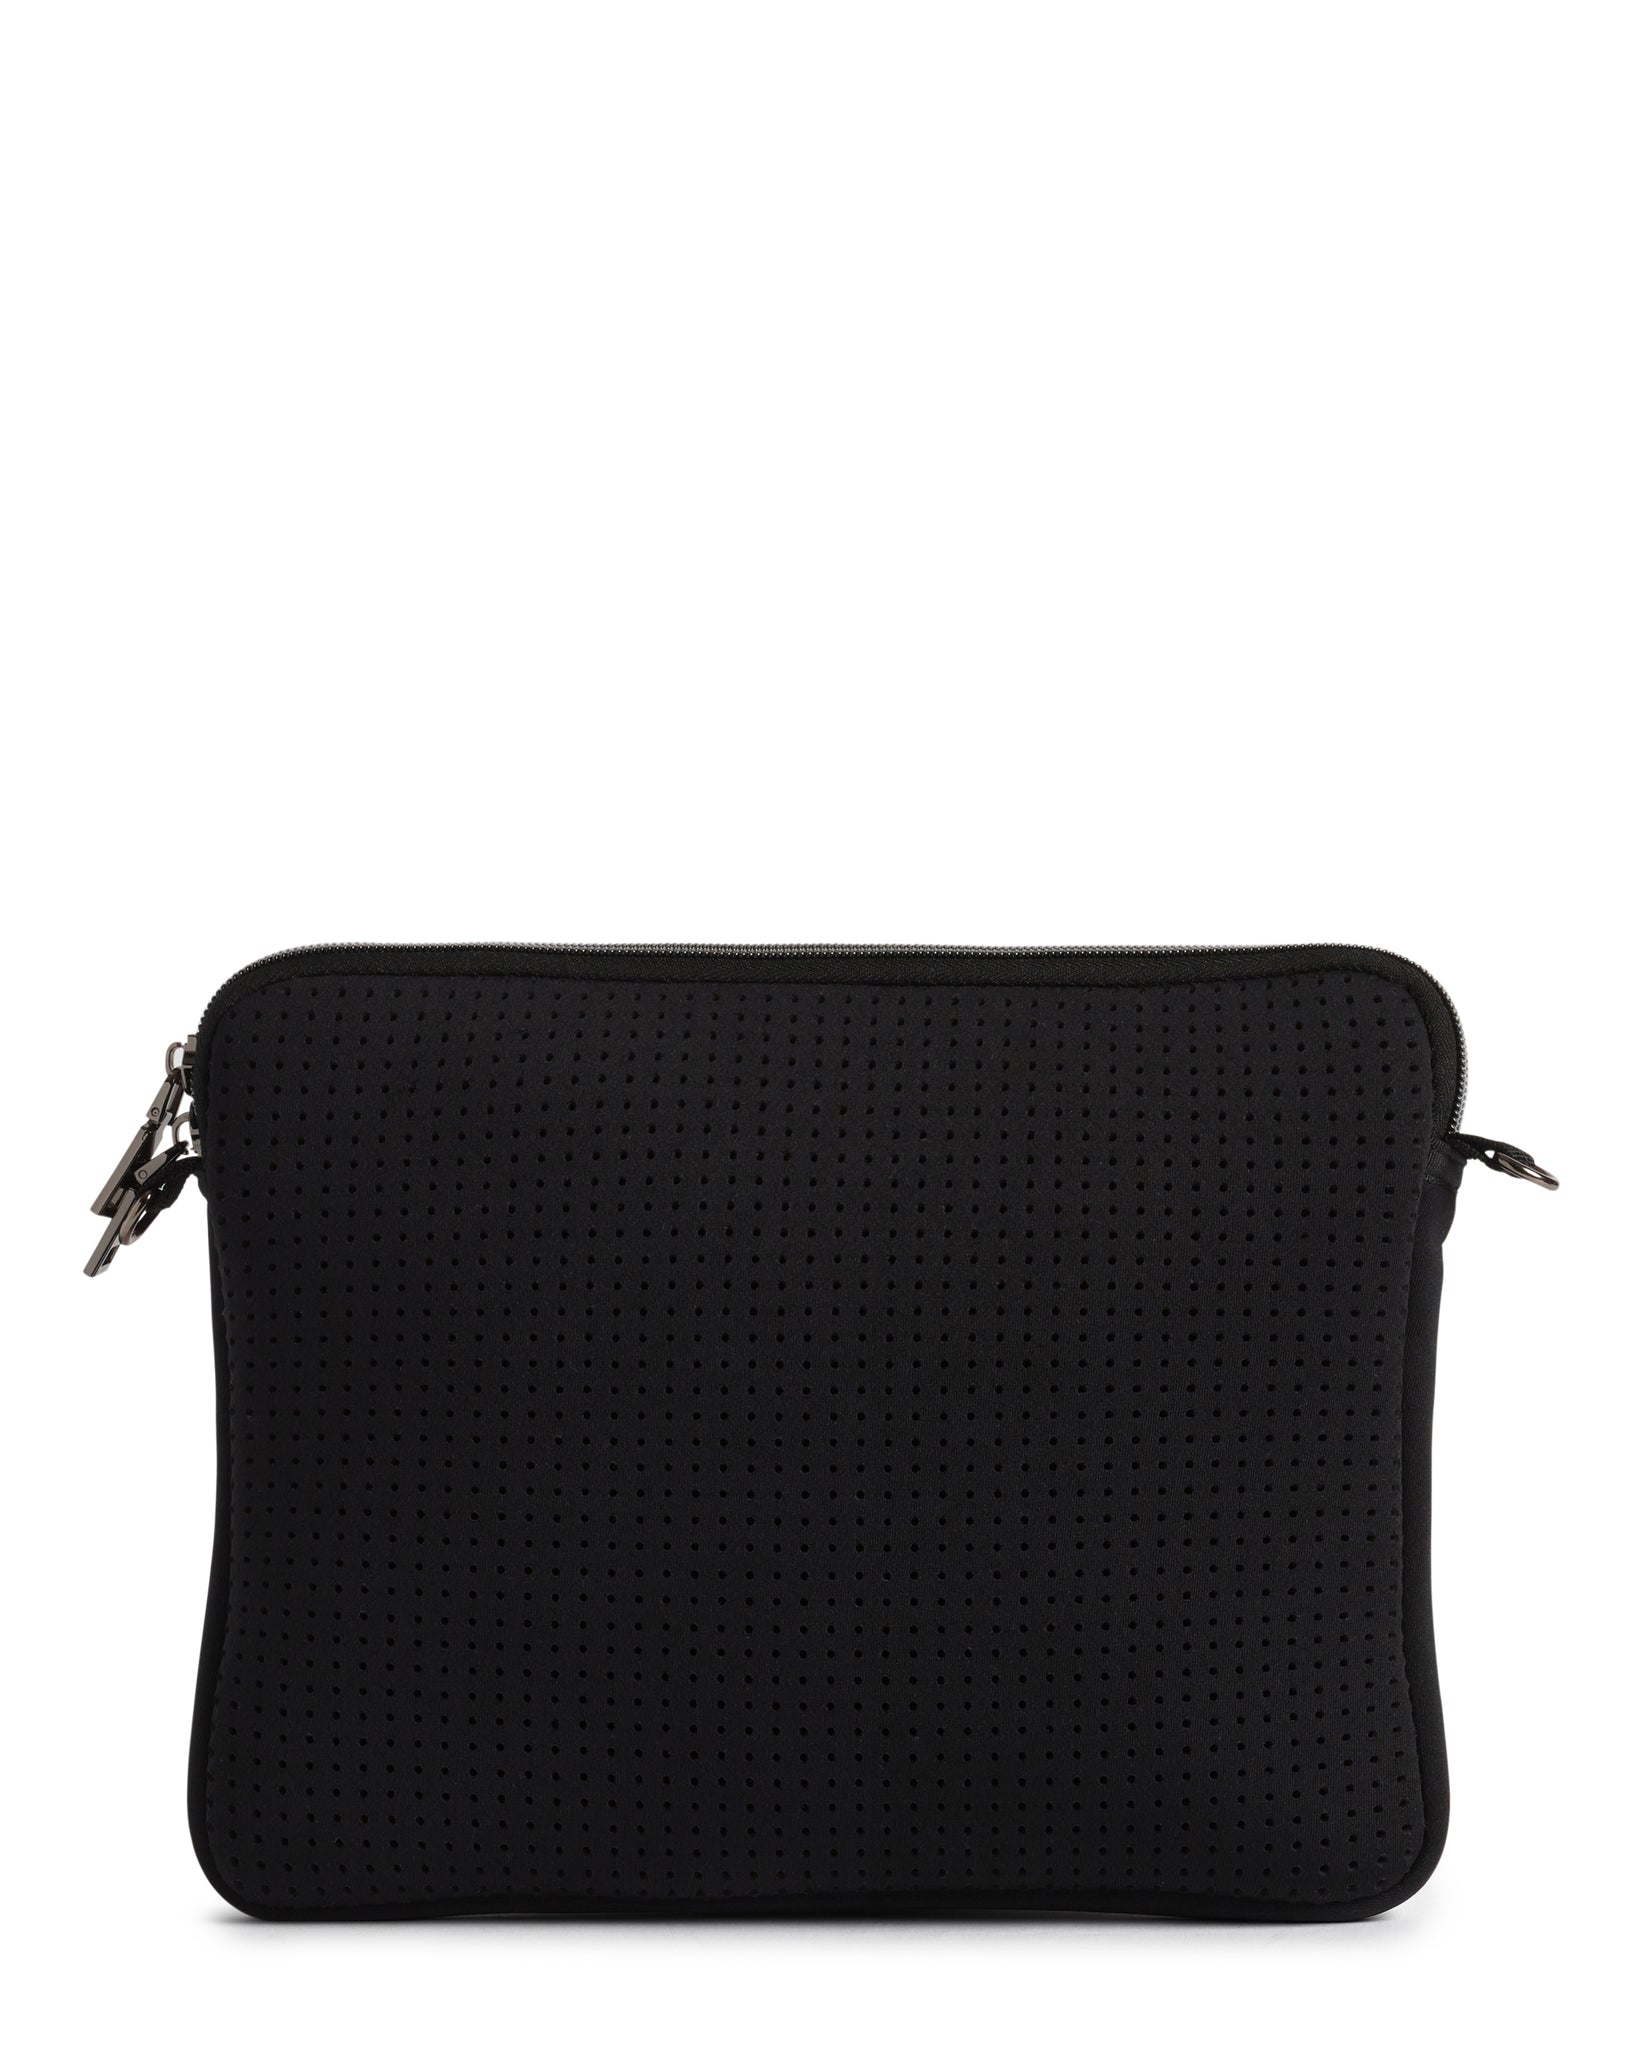 The Evie Bag (BLACK) Neoprene Crossbody Bag